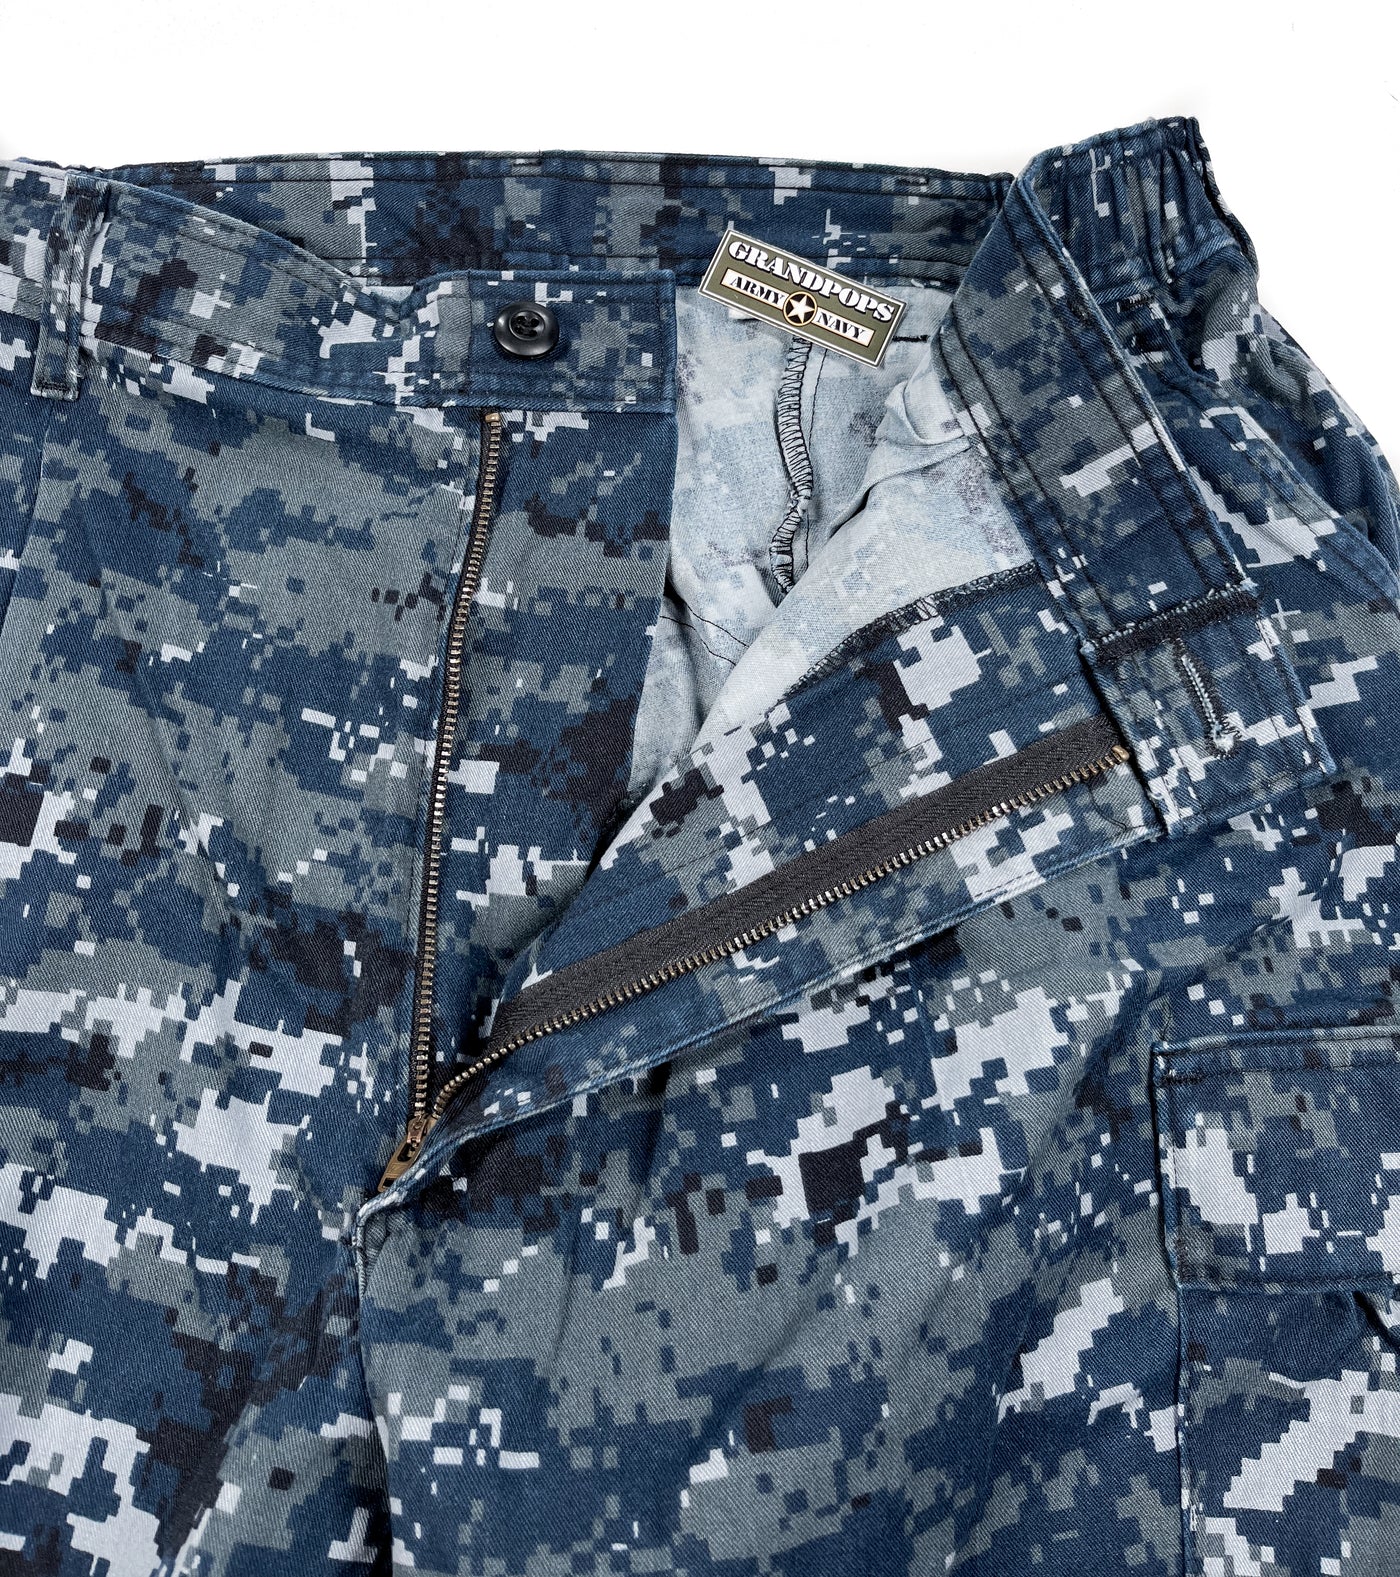 U.S. Navy NWU Type 1 Blueberries Blue Digital Trousers – GRANDPOPSARMYNAVY